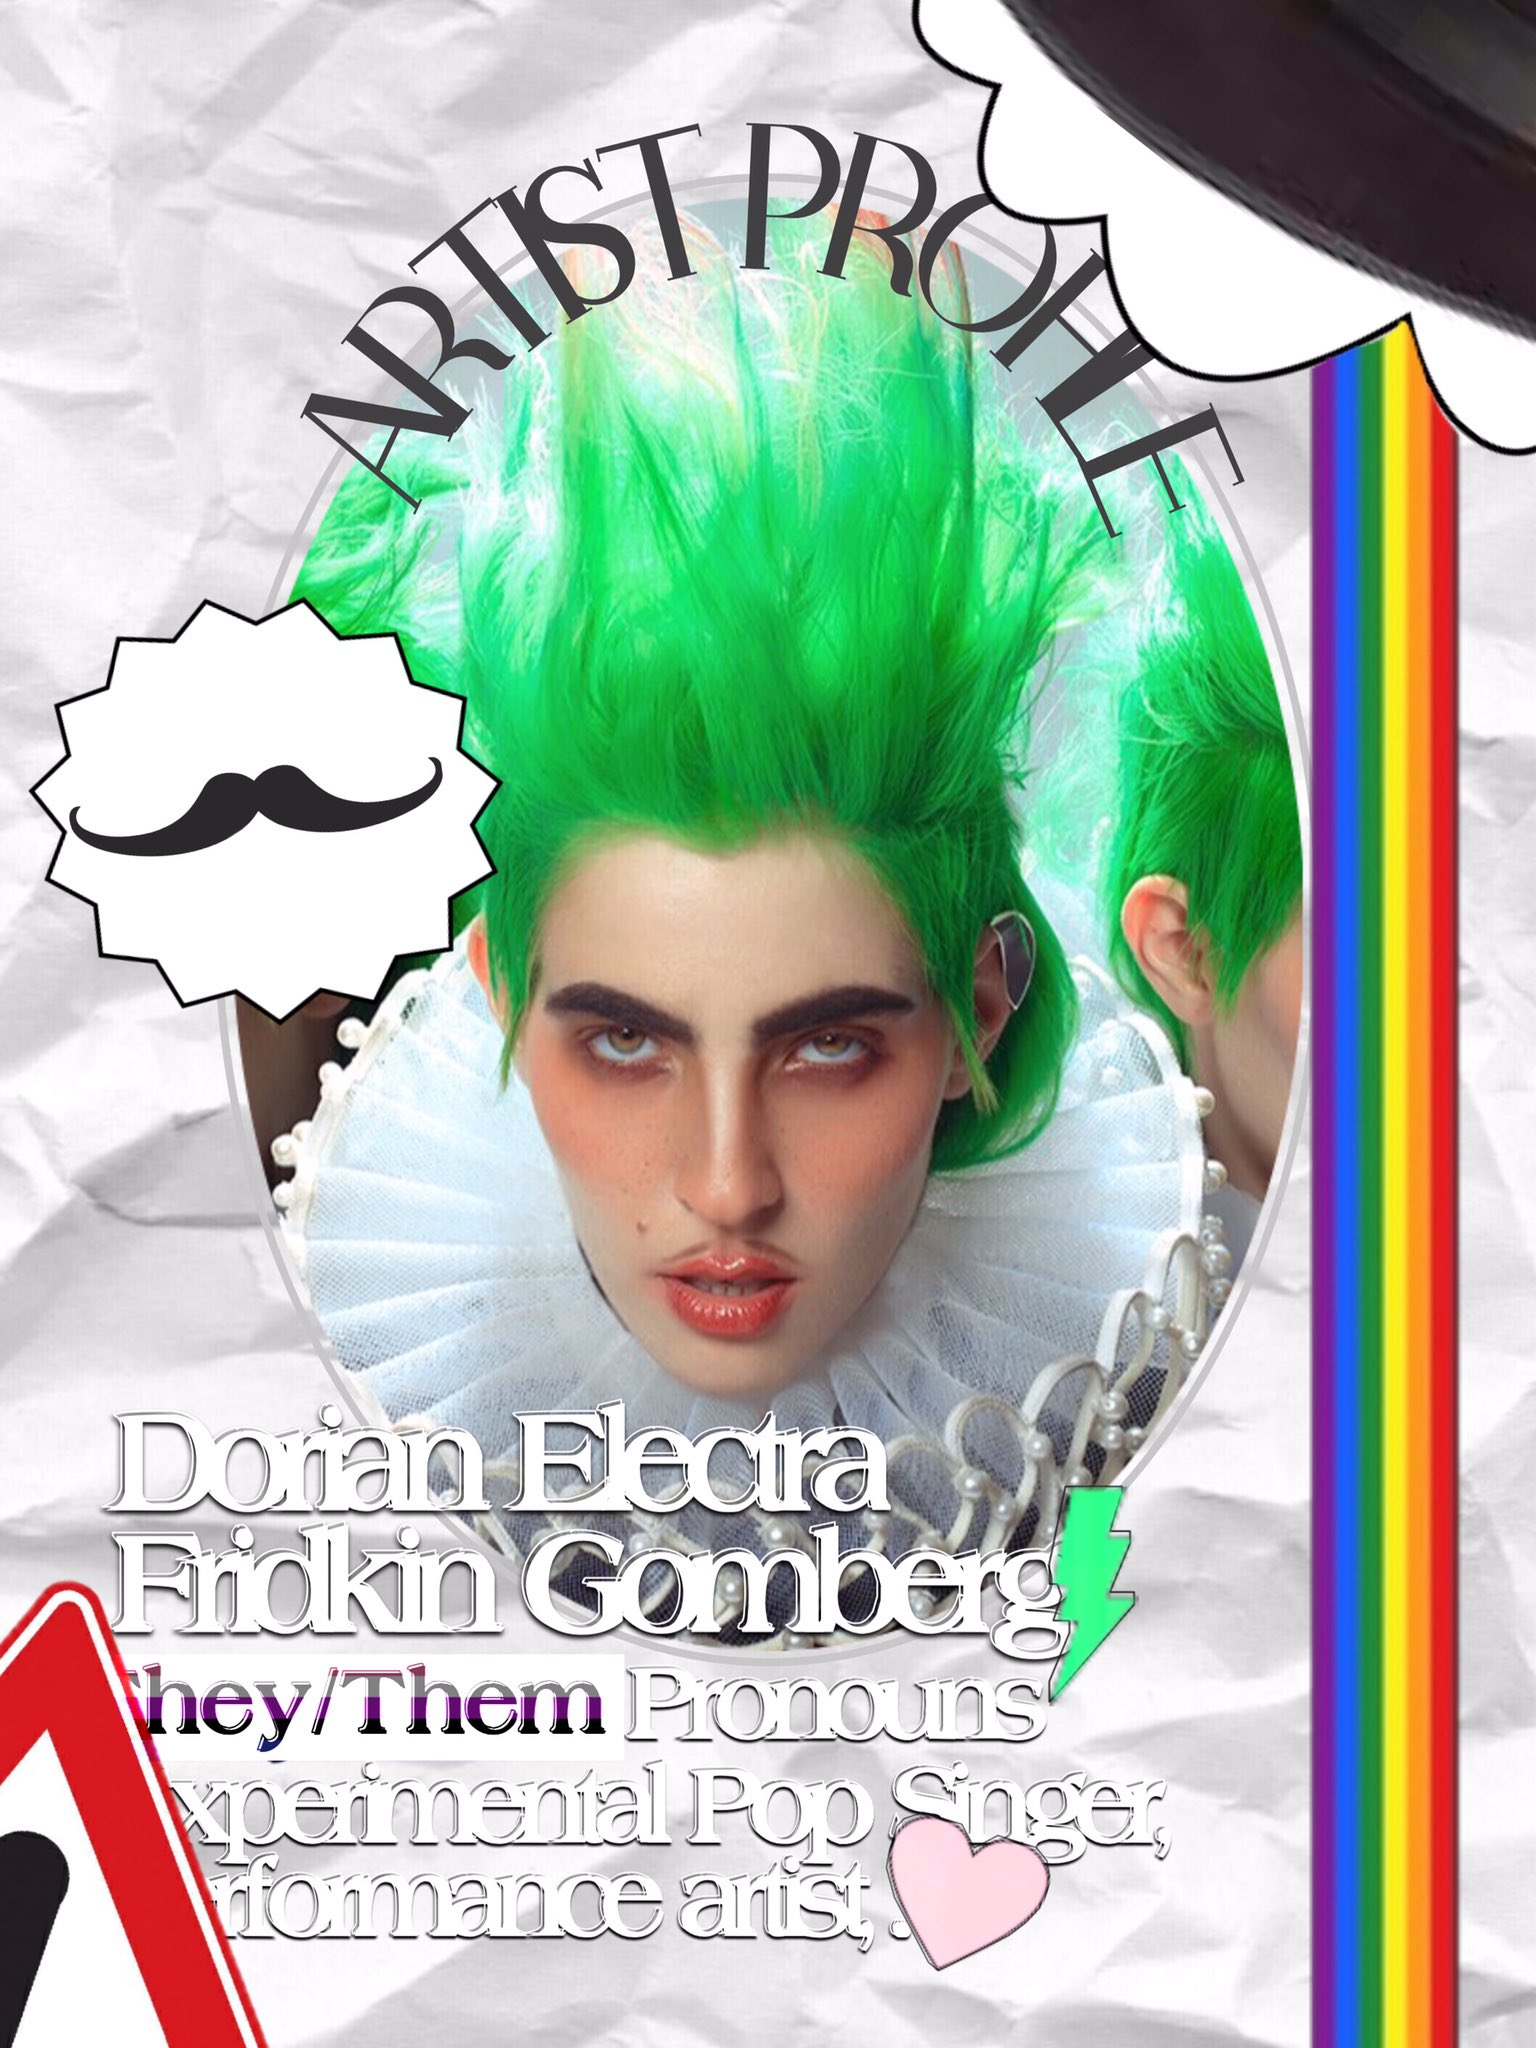 Dorian Electra (@DORIANELECTRA) / X